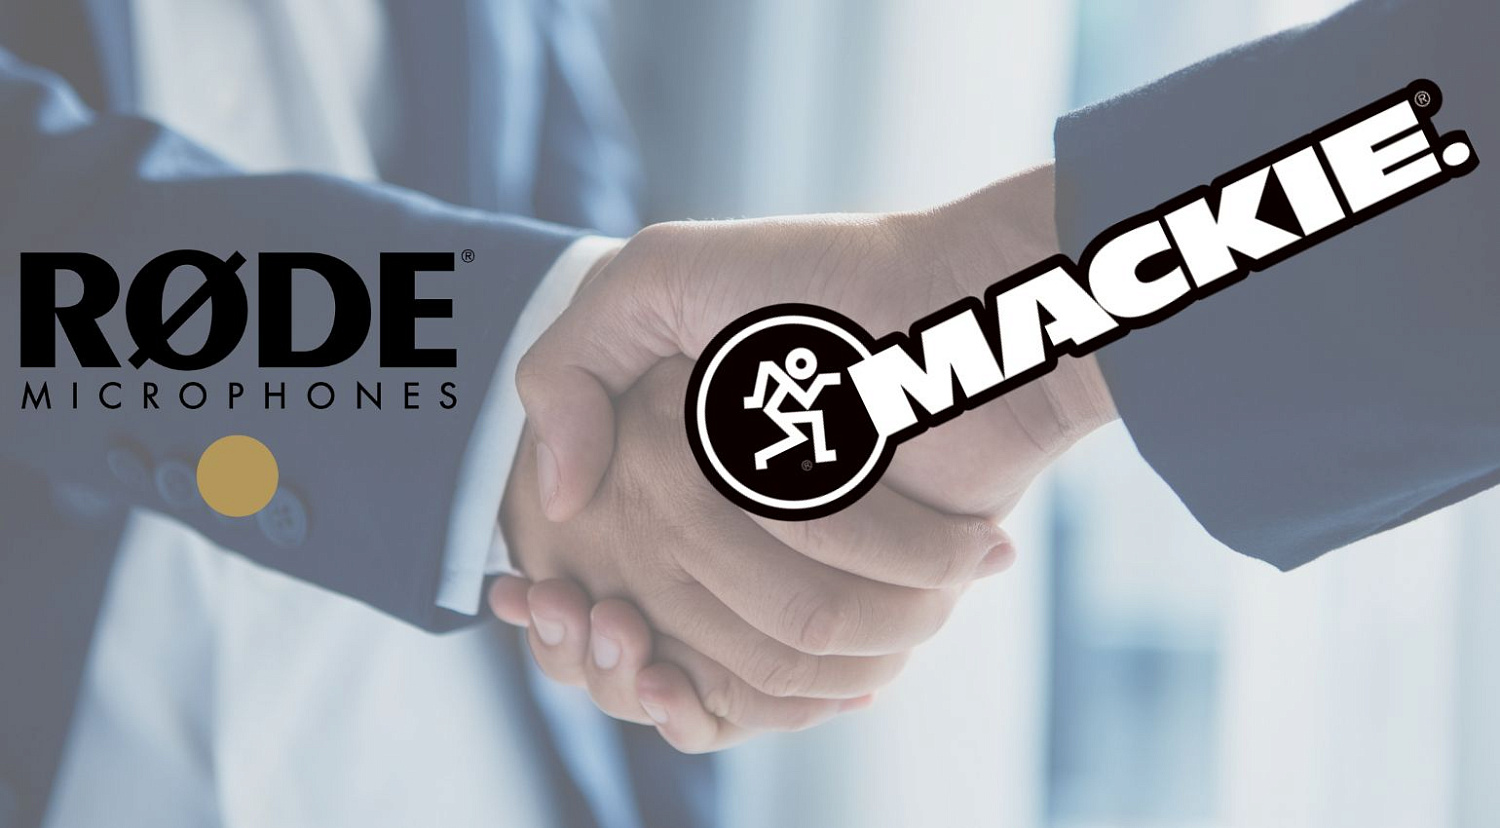 Rode покупает Mackie: два гиганта музыкальных технологий объединяются в сделке стоимостью $180 млн.